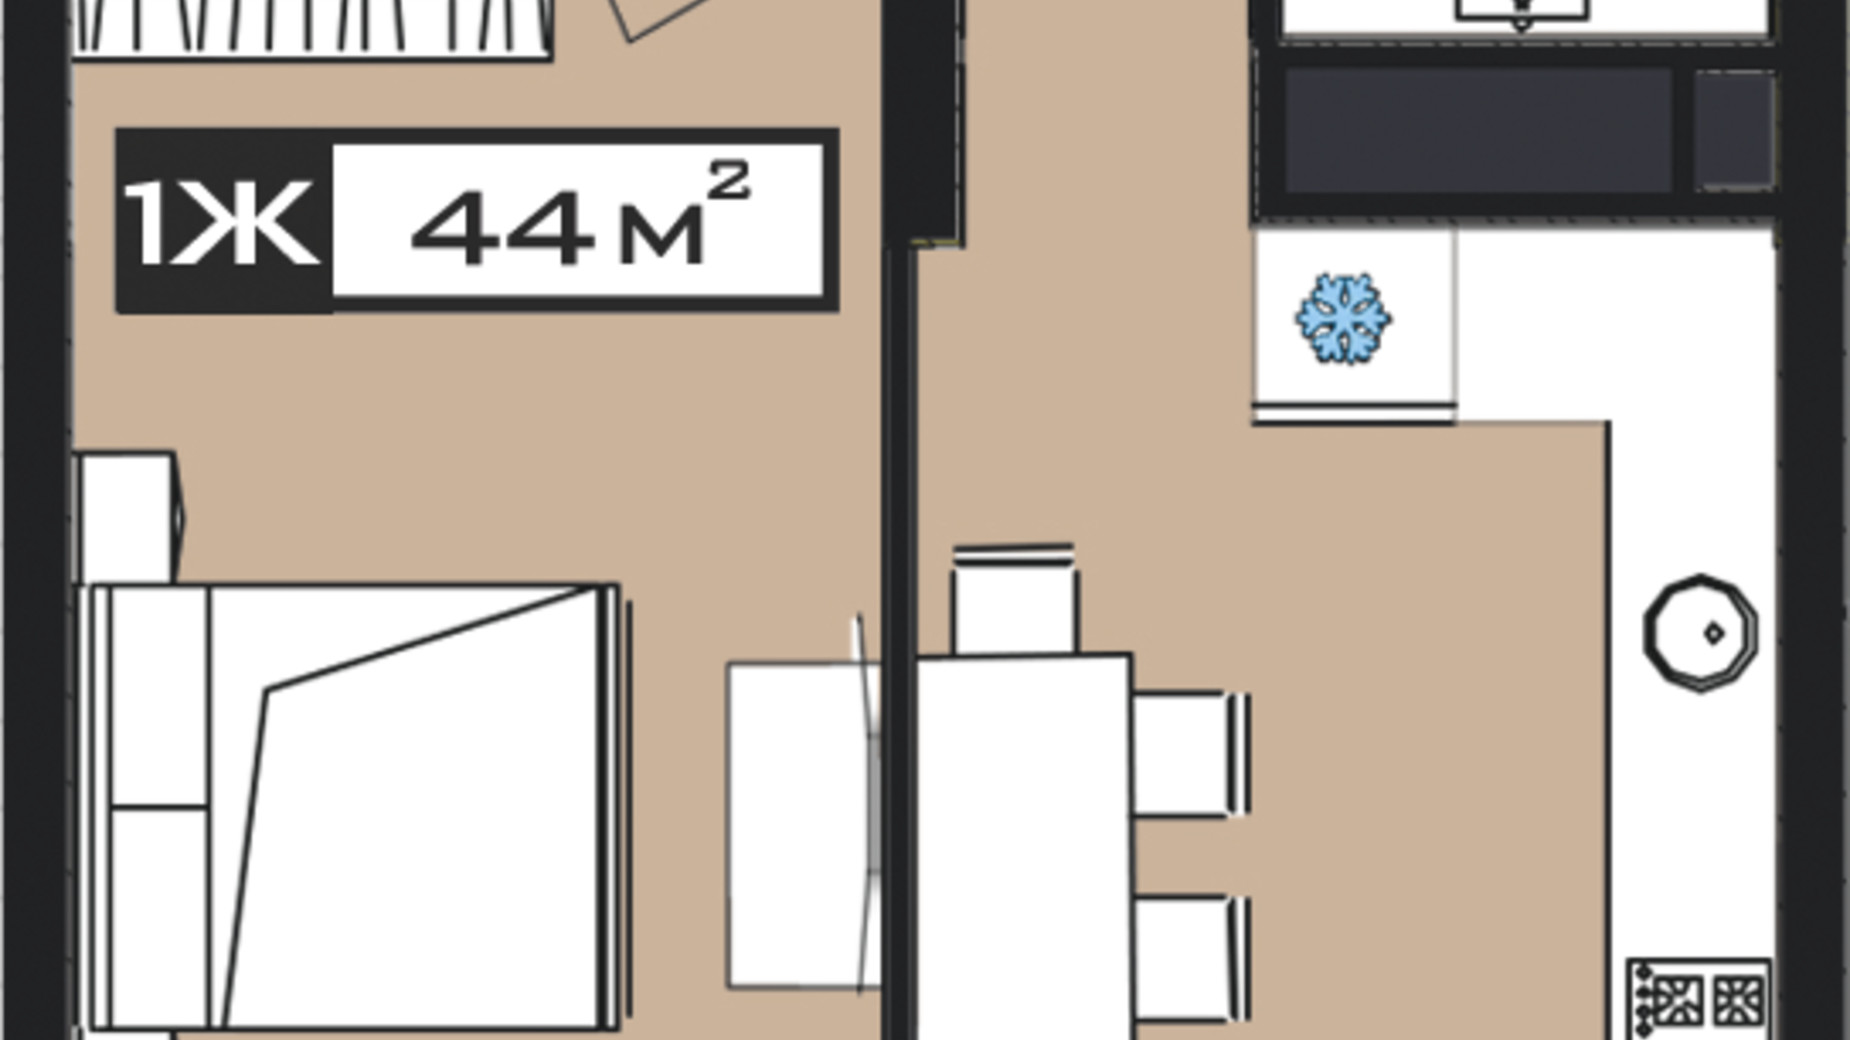 Планировка 1-комнатной квартиры в ЖК Peyot 44 м², фото 506408